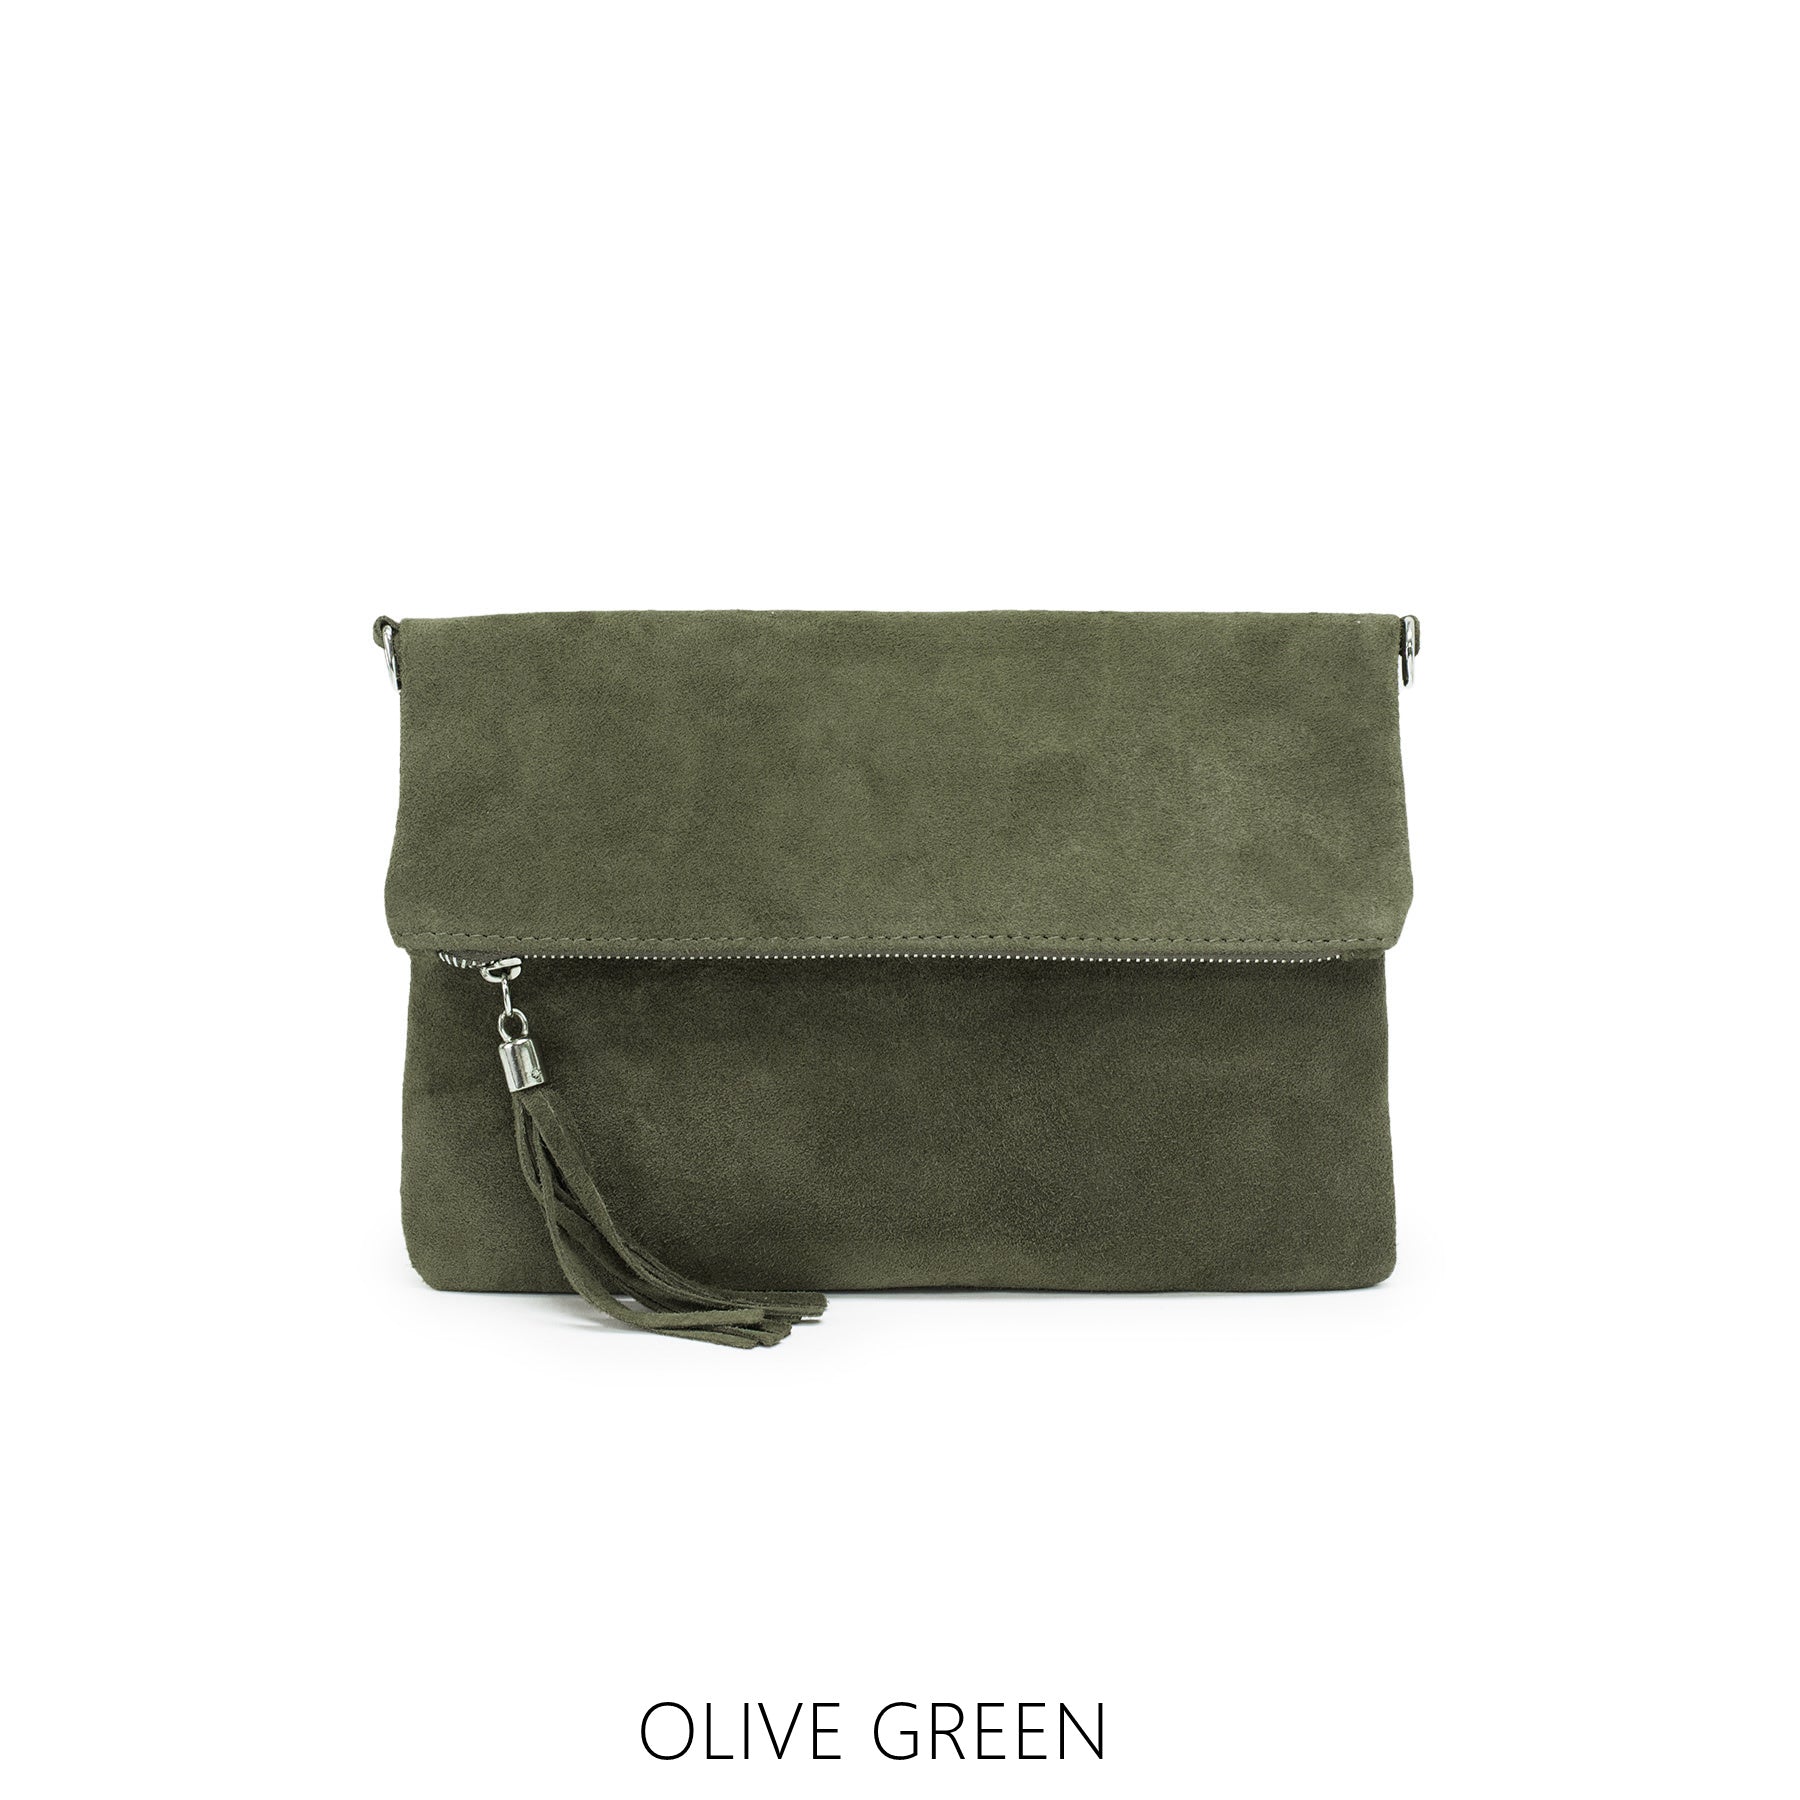 Luxury Clutch Bag, Olive Green Bag, Fashion Clutch, Luxury Shoulder Bag,  Crochet Crossbody Purse, Party Shoulder Bag, Crochet Boho Bag - Etsy